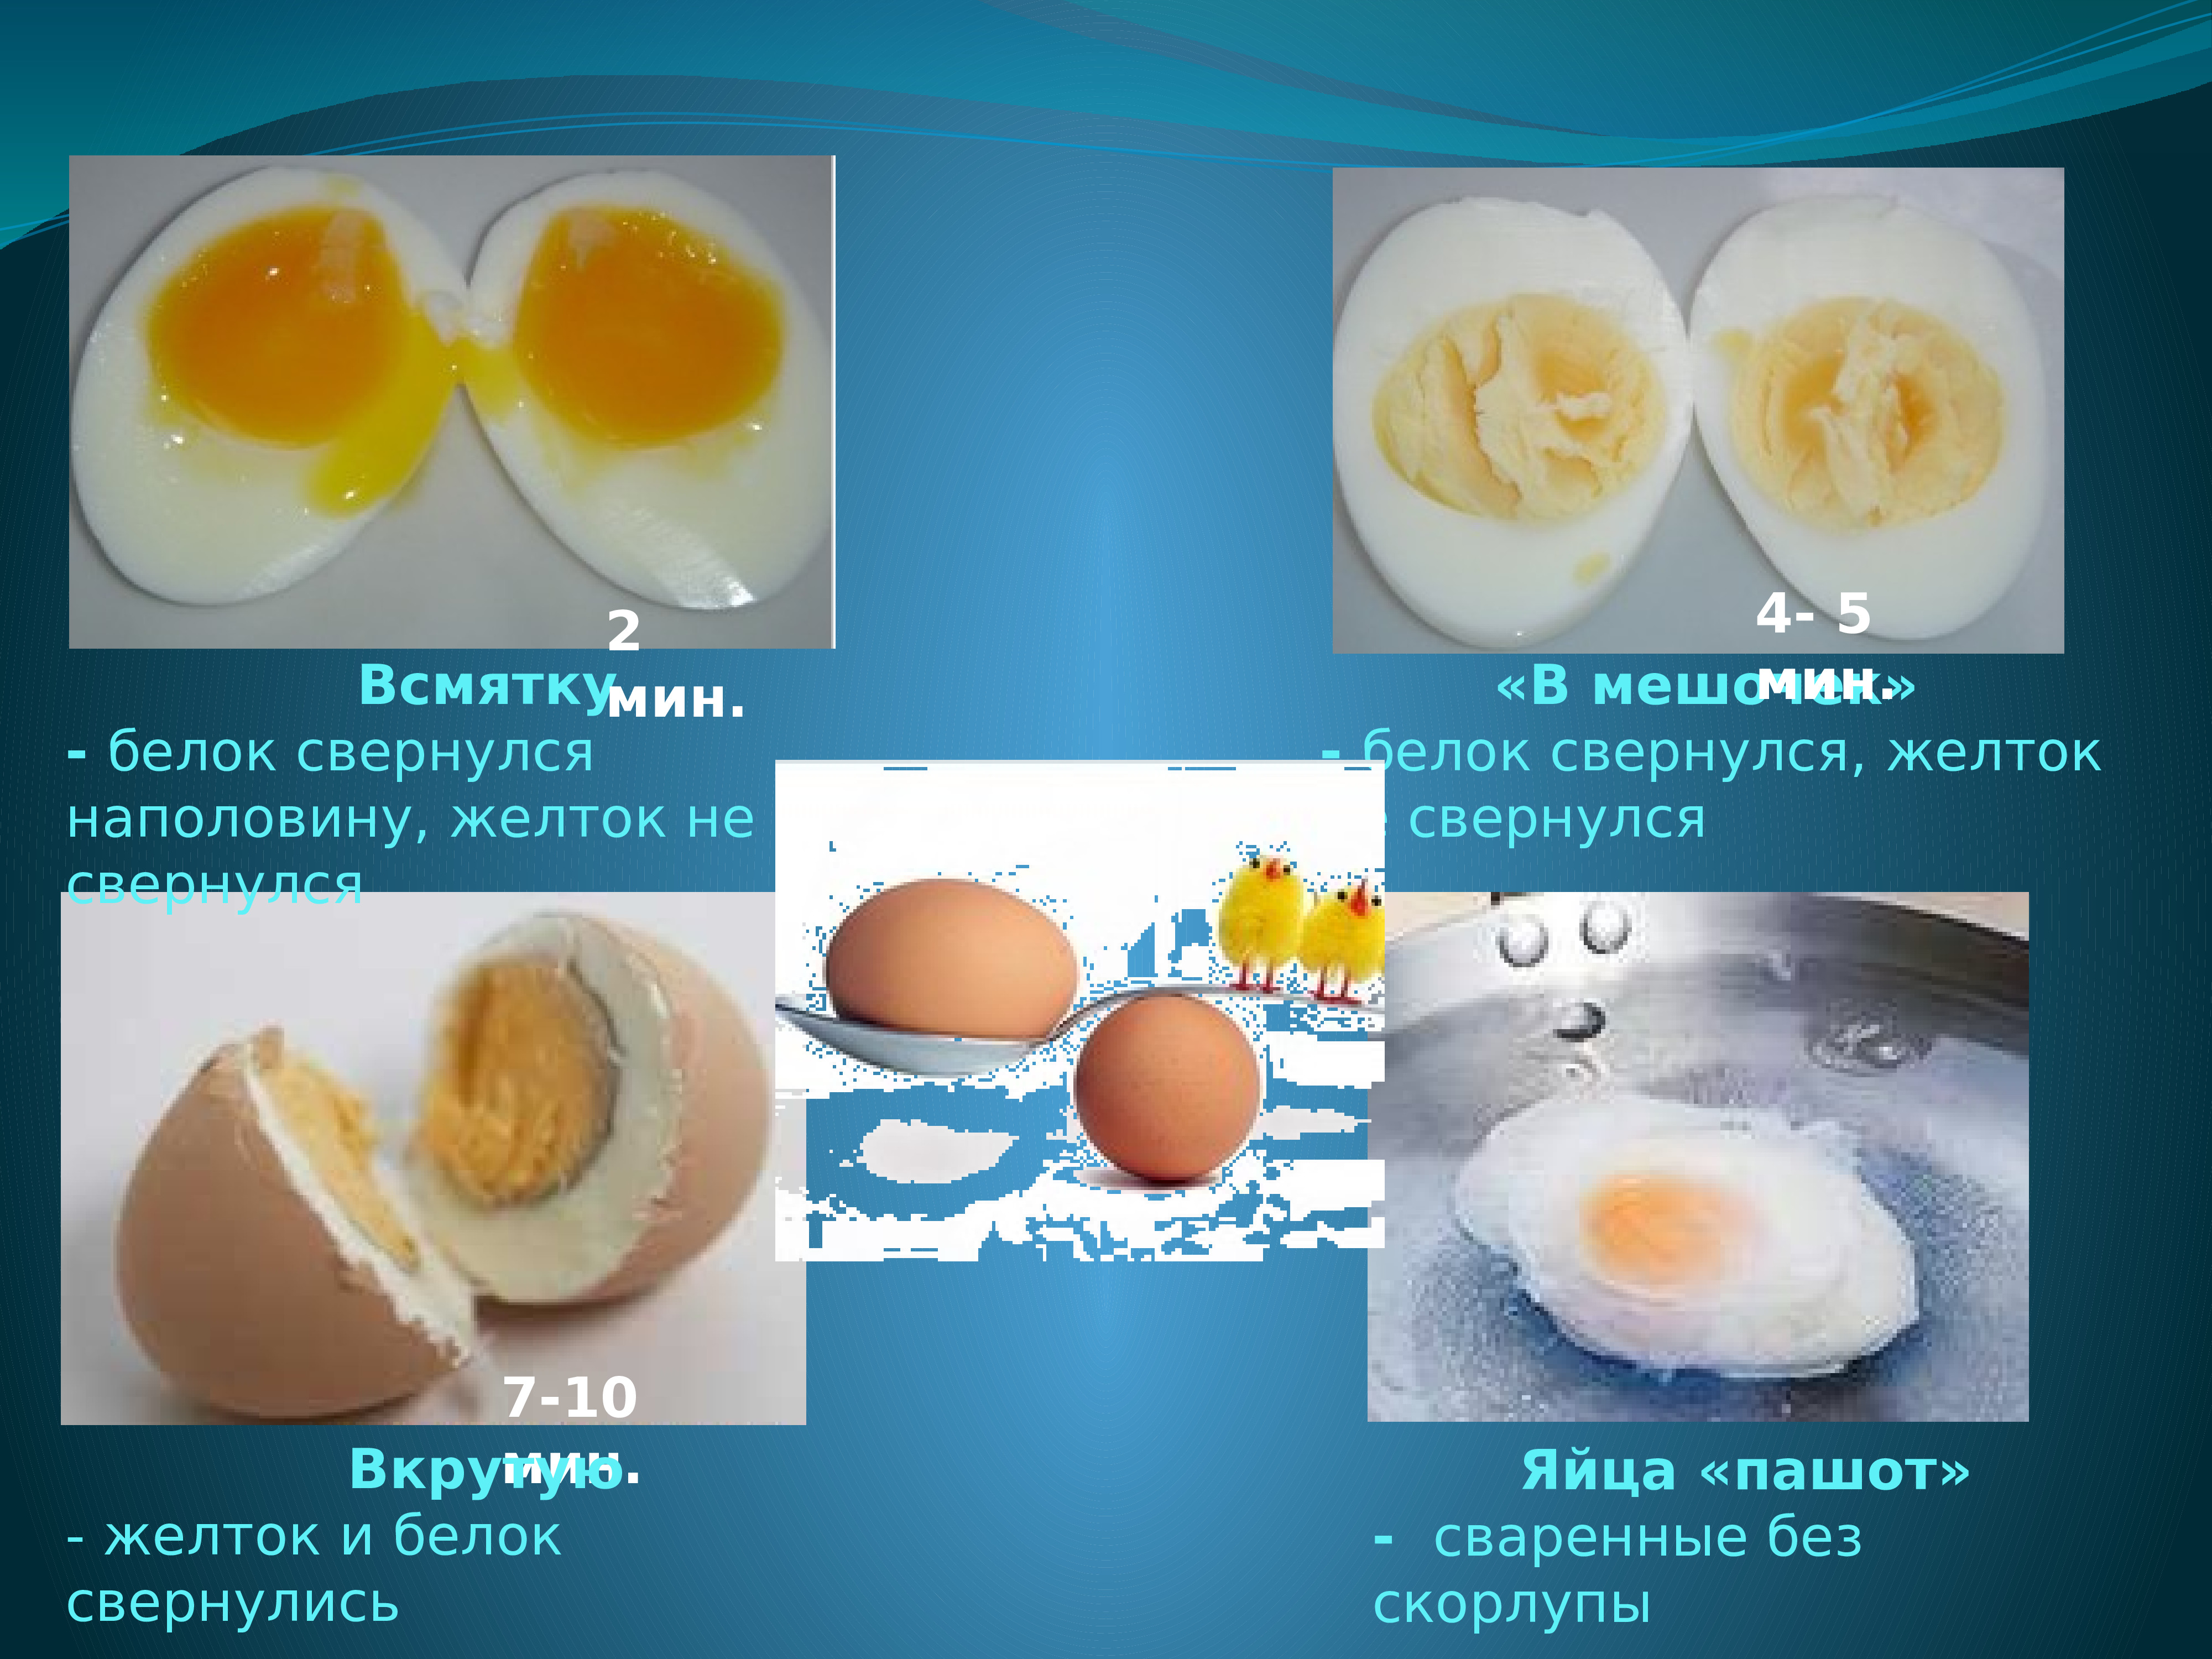 Сколько грамм скорлупы в яйце. Яйцо всмятку и пашот разница. Яйца пашот всмятку. Яйцо в мешочек без скорлупы. Яйцо пашот ккал.